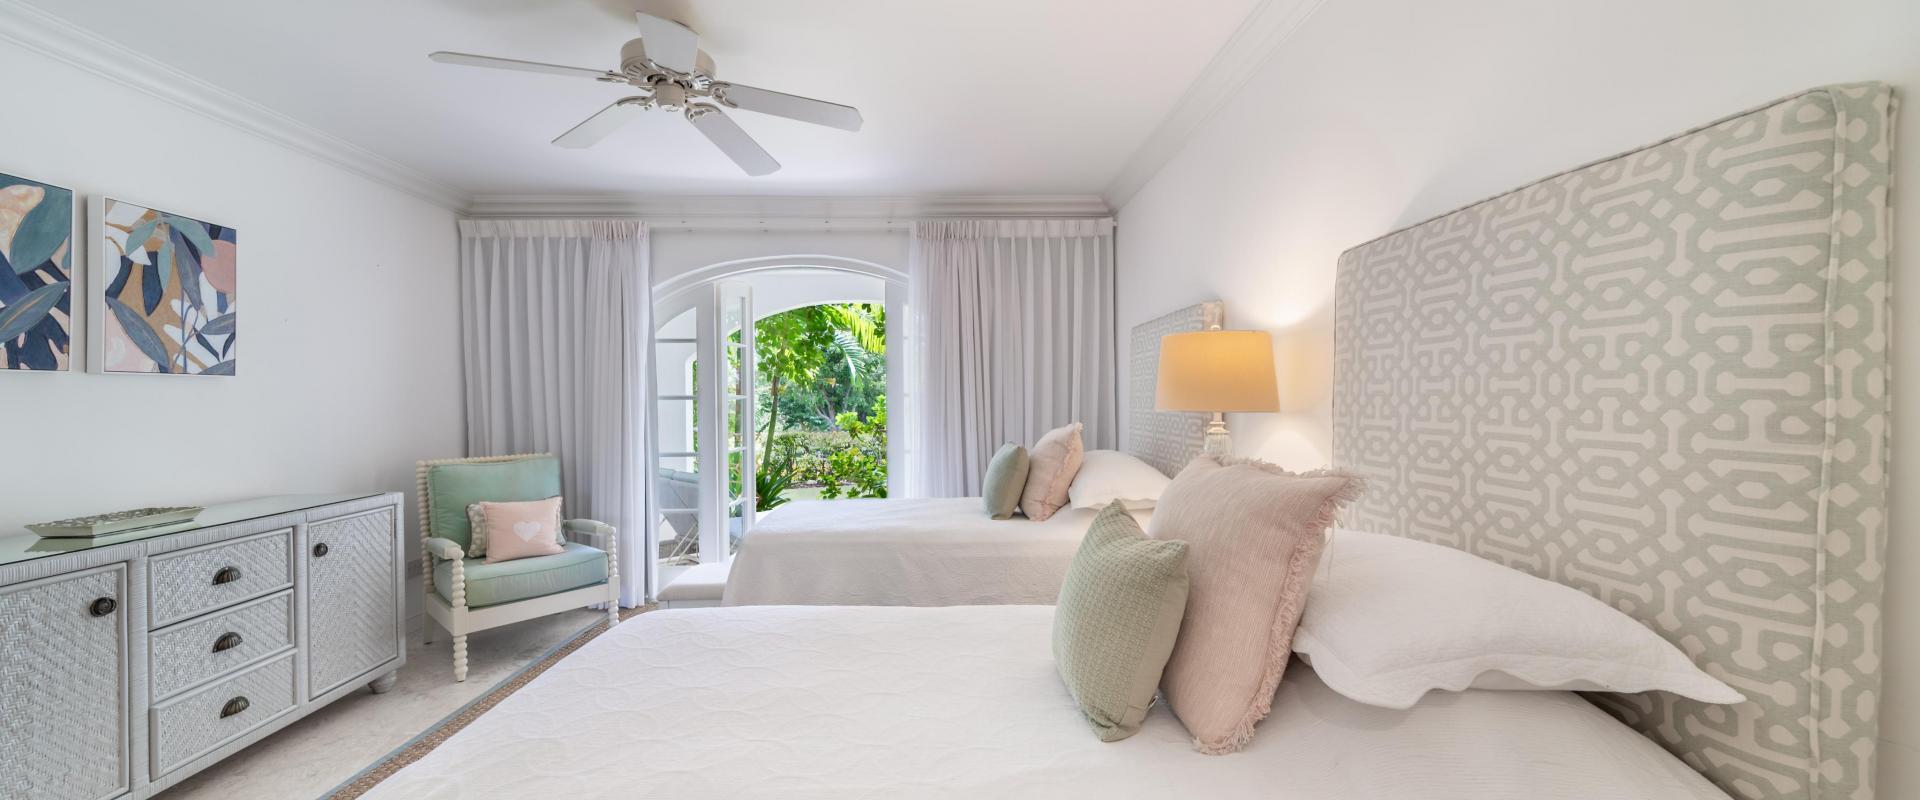 Forest Hills 25 Barbados Holiday Rental Royal Westmoreland Bedroom 2